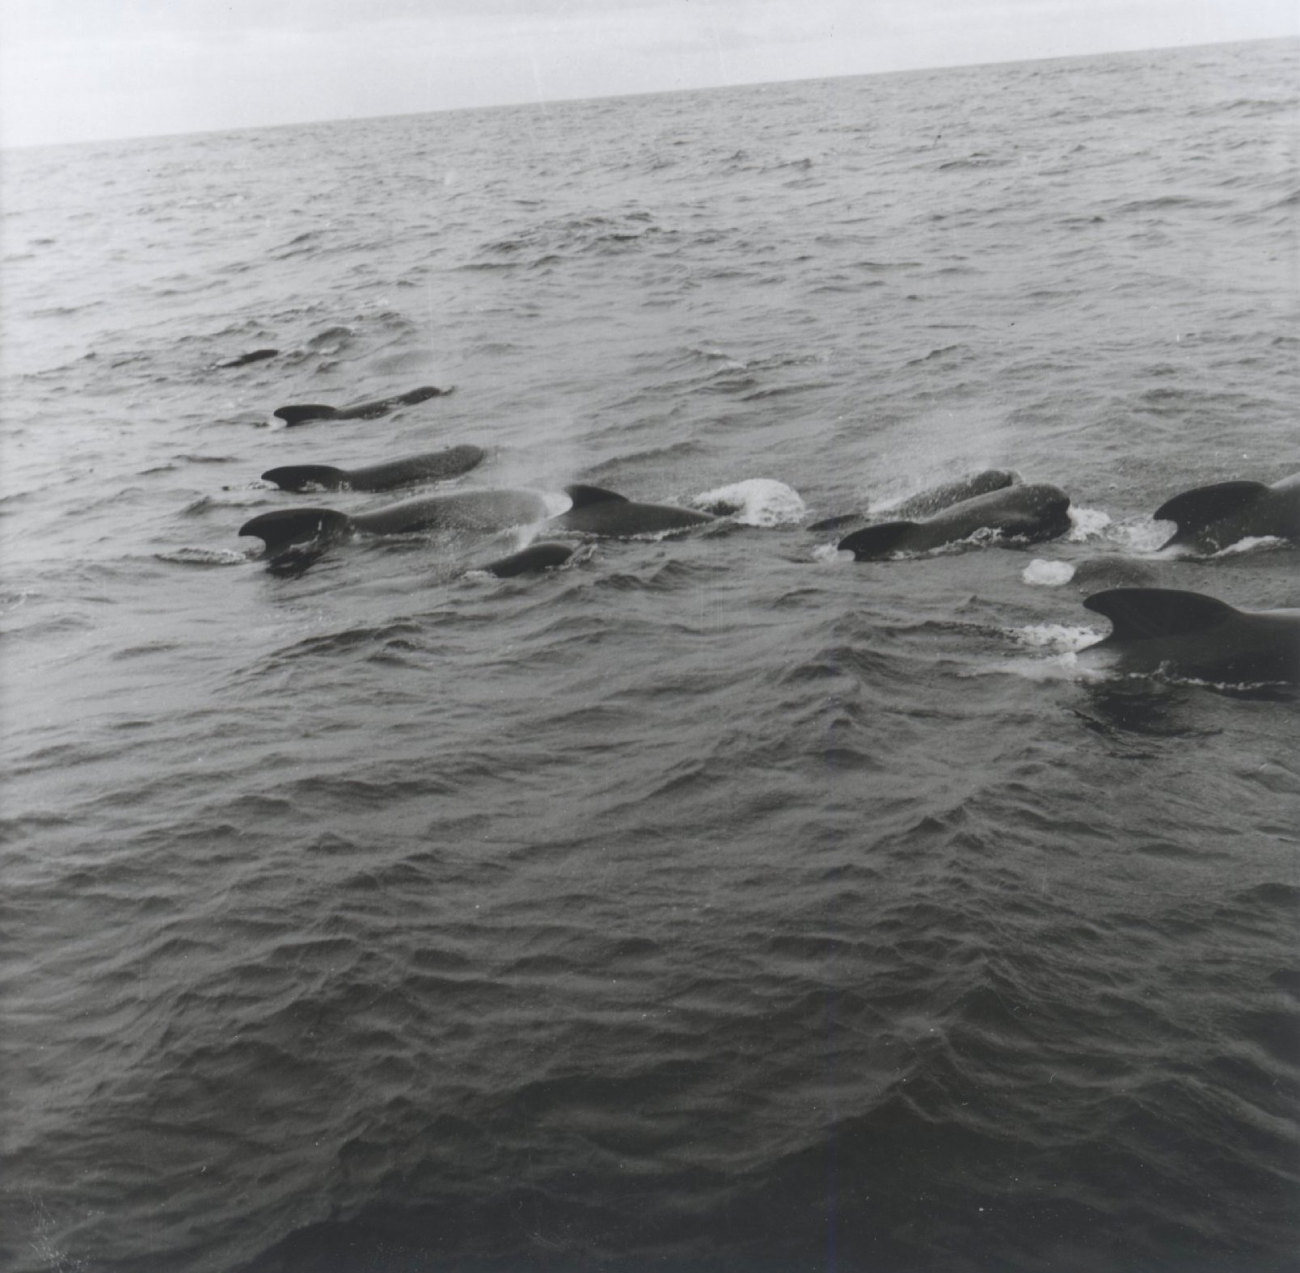 A pod of pilot whales